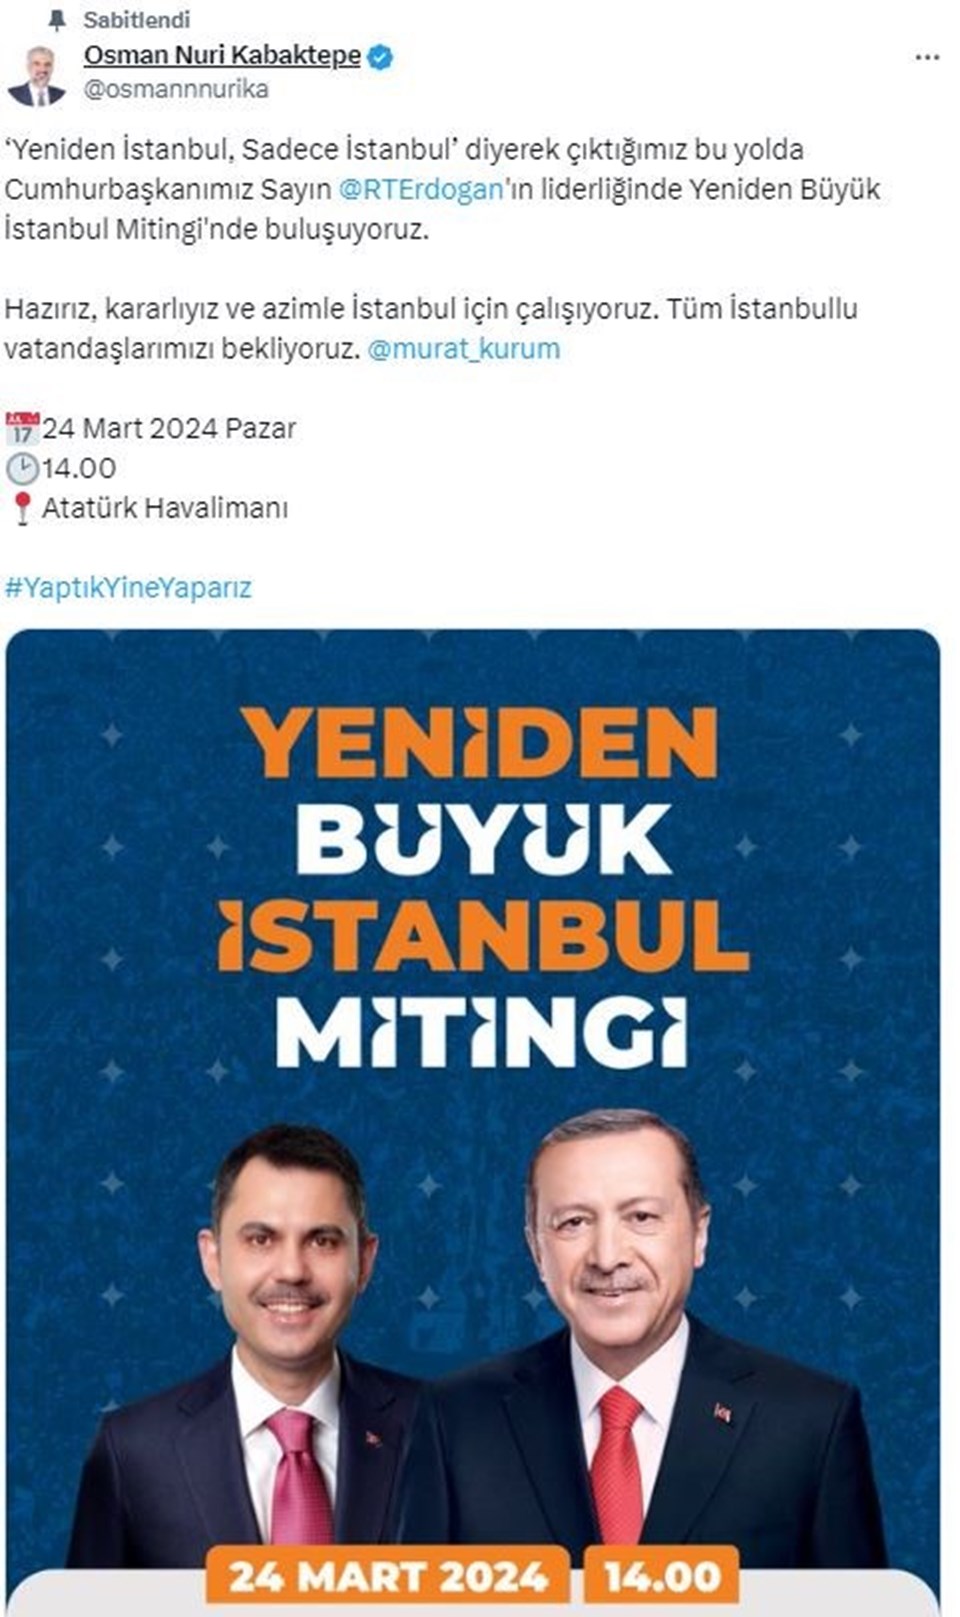 AK Parti İstanbul mitingi ne zaman, saat kaçta, nerede düzenlenecek? AK Parti "Yeniden Büyük İstanbul Mitingi"nin ayrıntıları belli oldu - 1